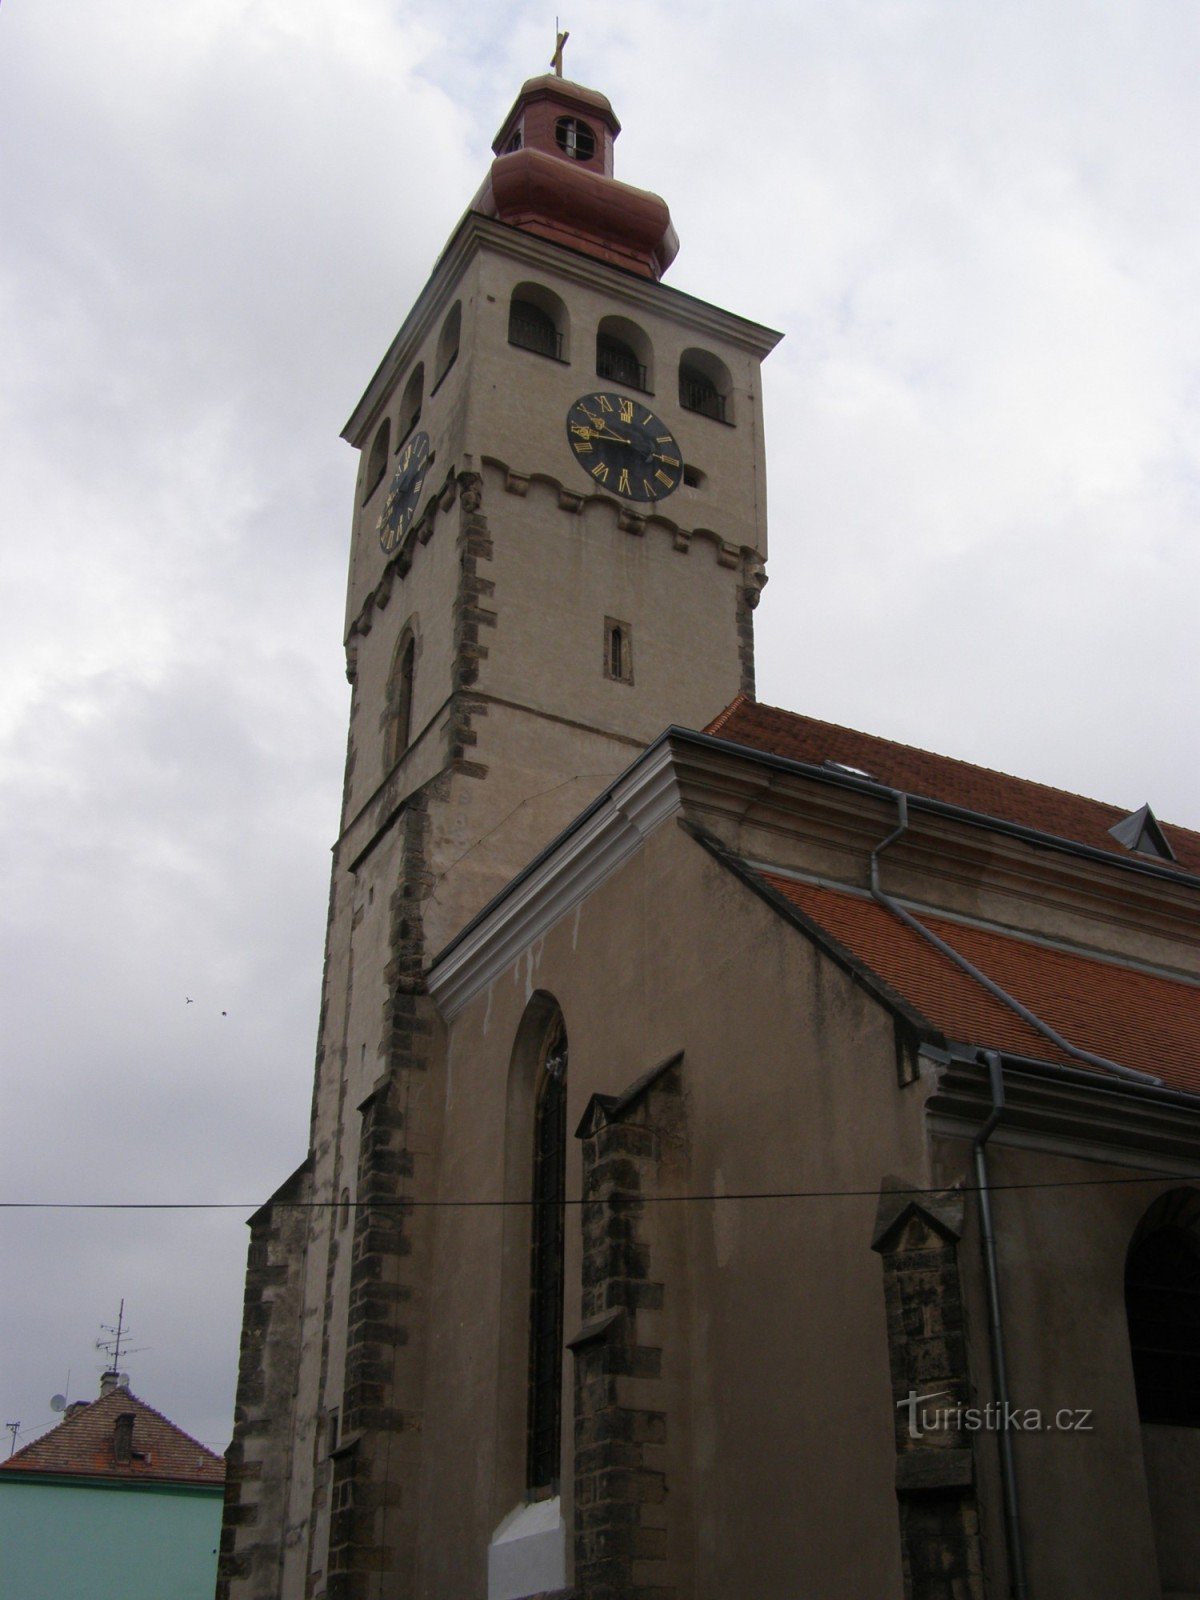 Nový Bydžov - kirken St. Lawrence